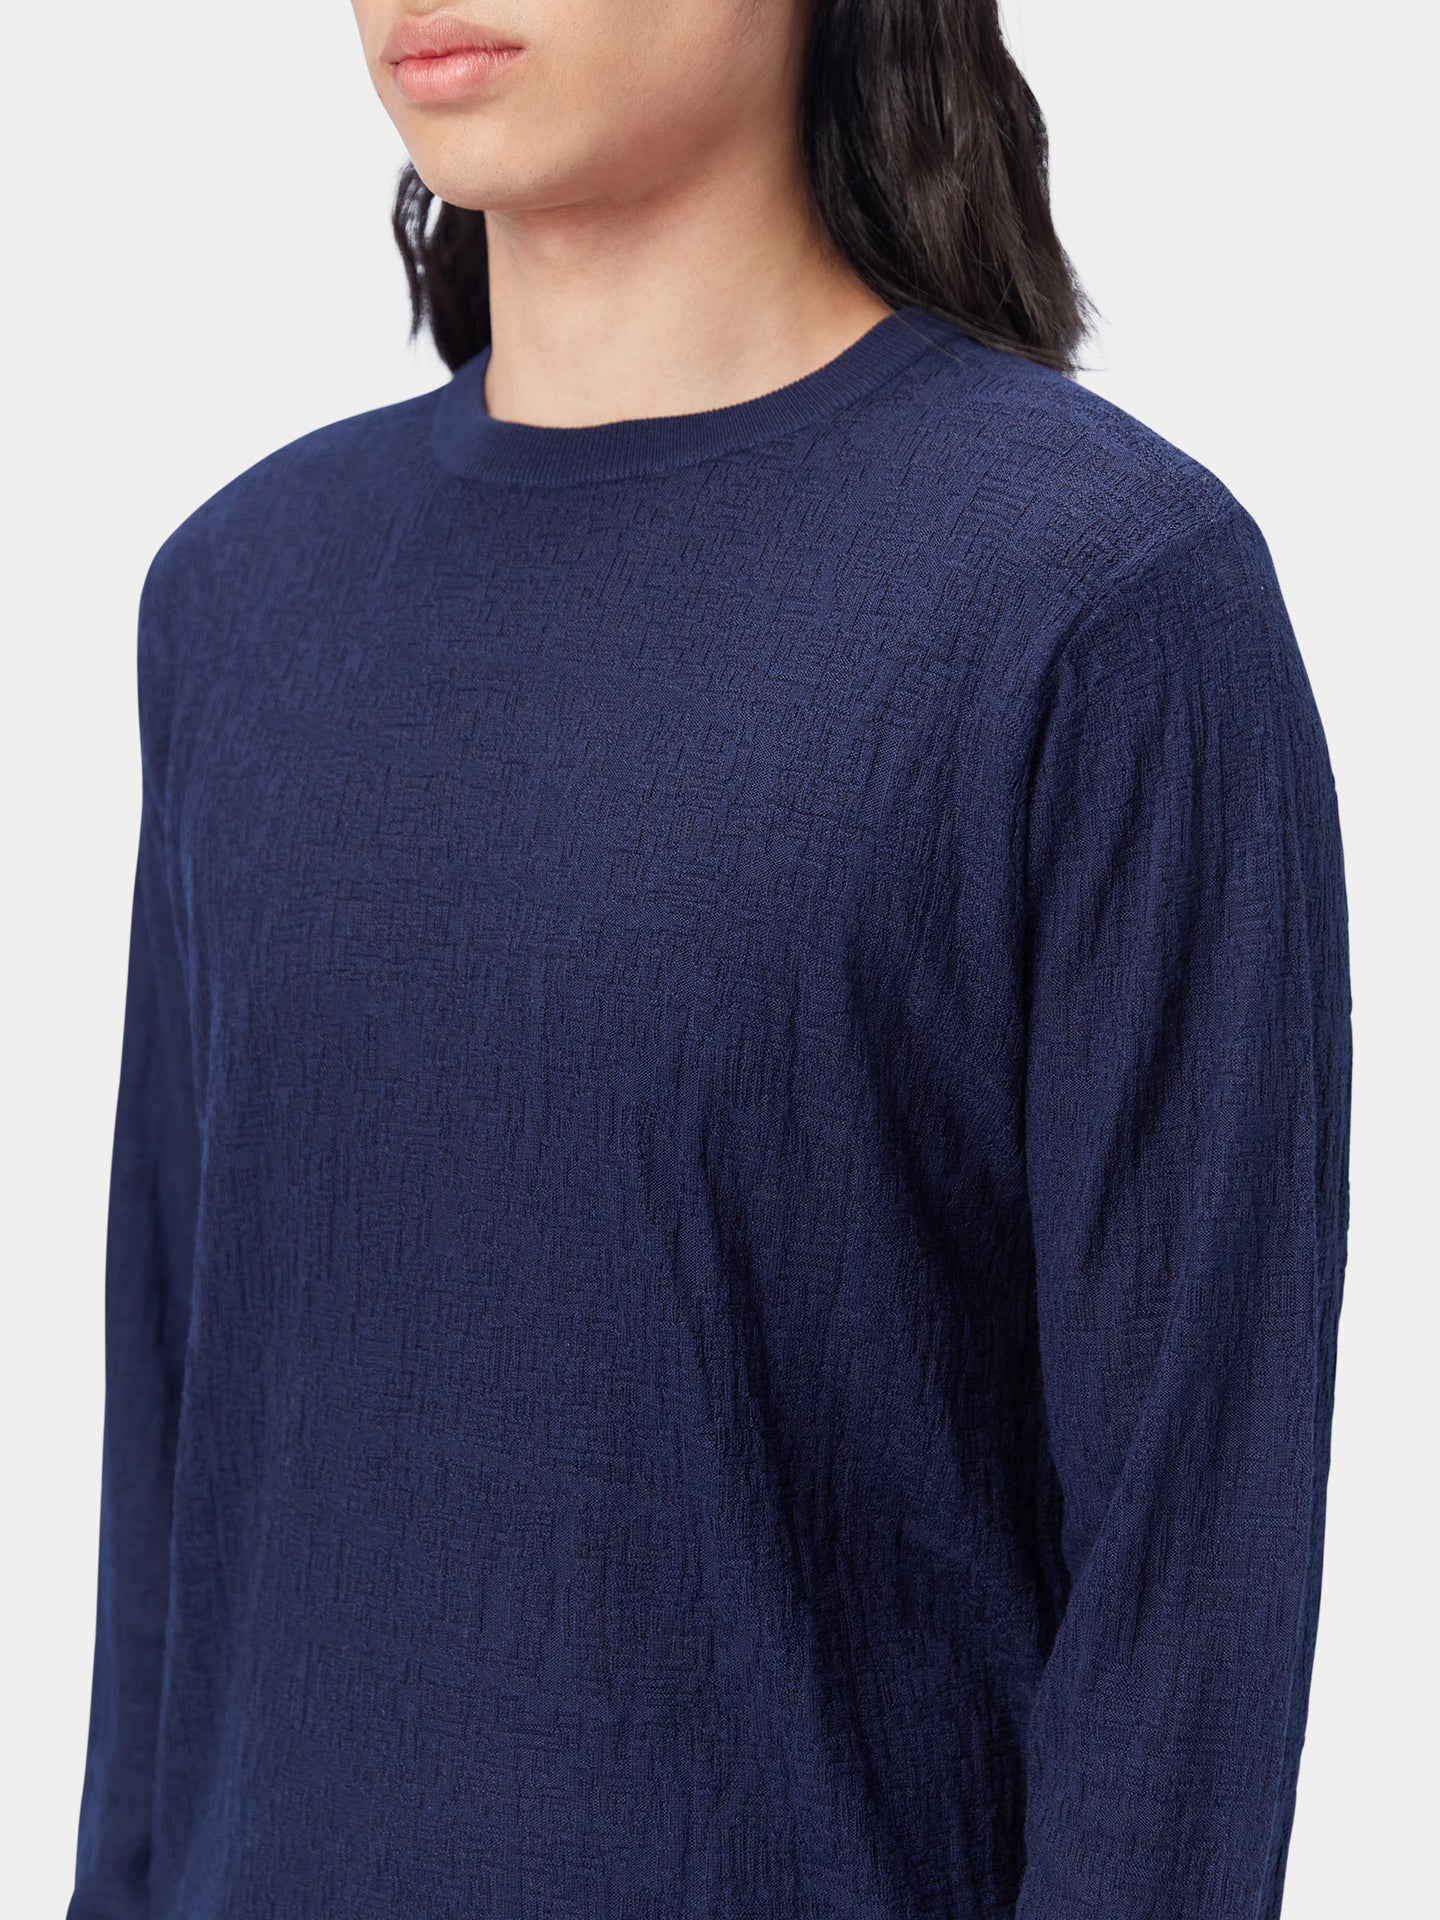 Men's Lightweight Silk Cashmere Textured Sweater Navy Blazer - Gobi Cashmere